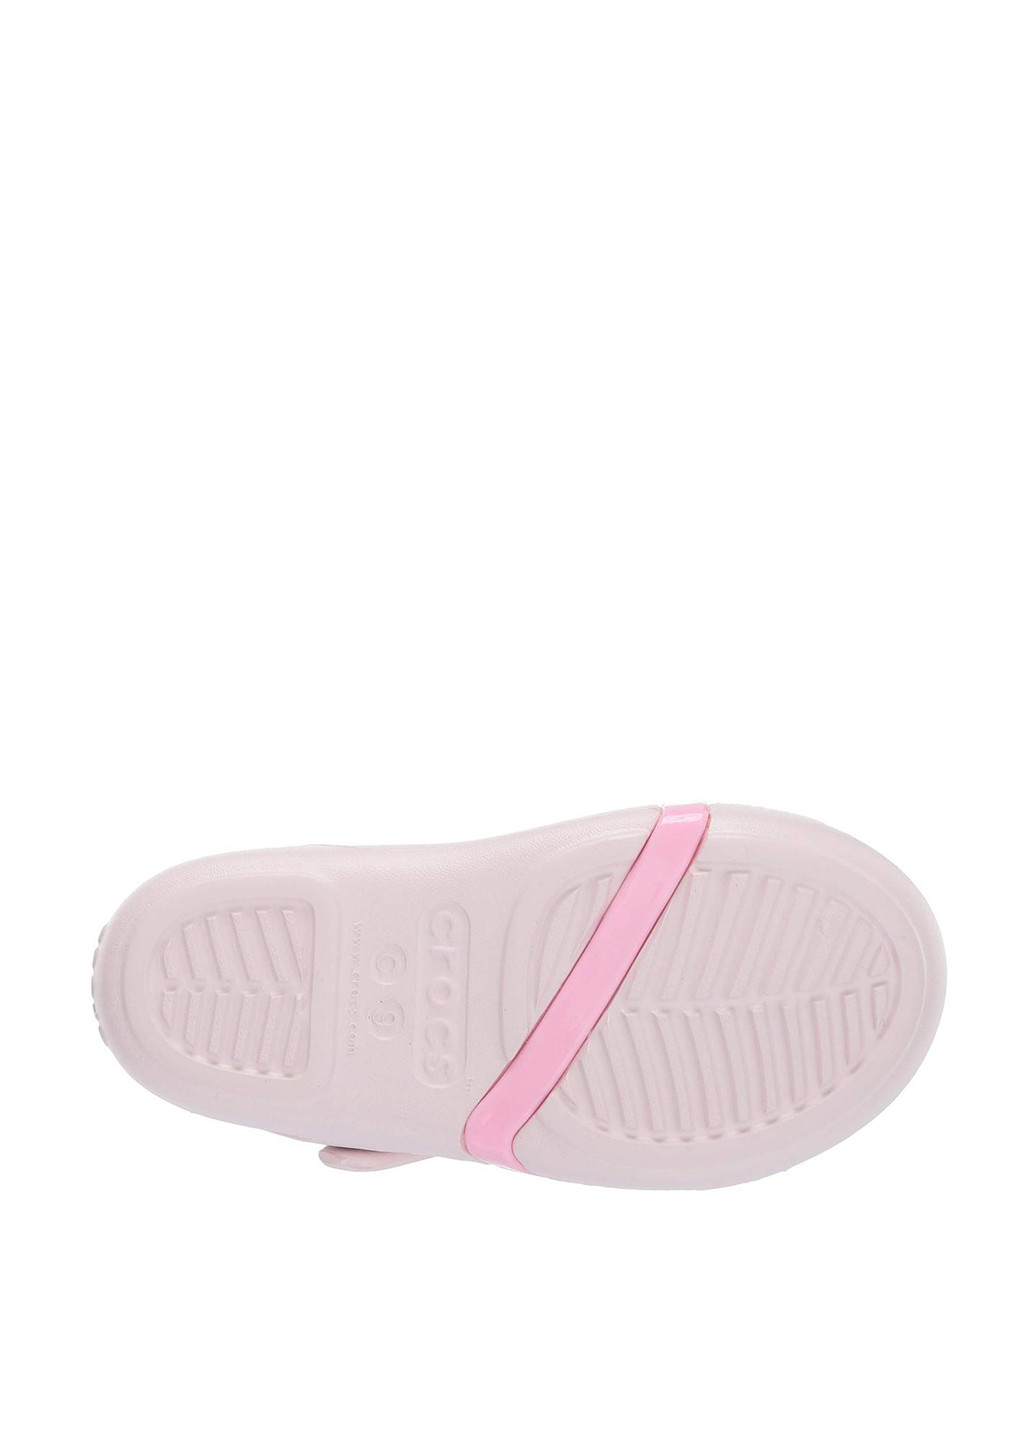 Сандалії Crocs однотонна світло-рожева пляжна